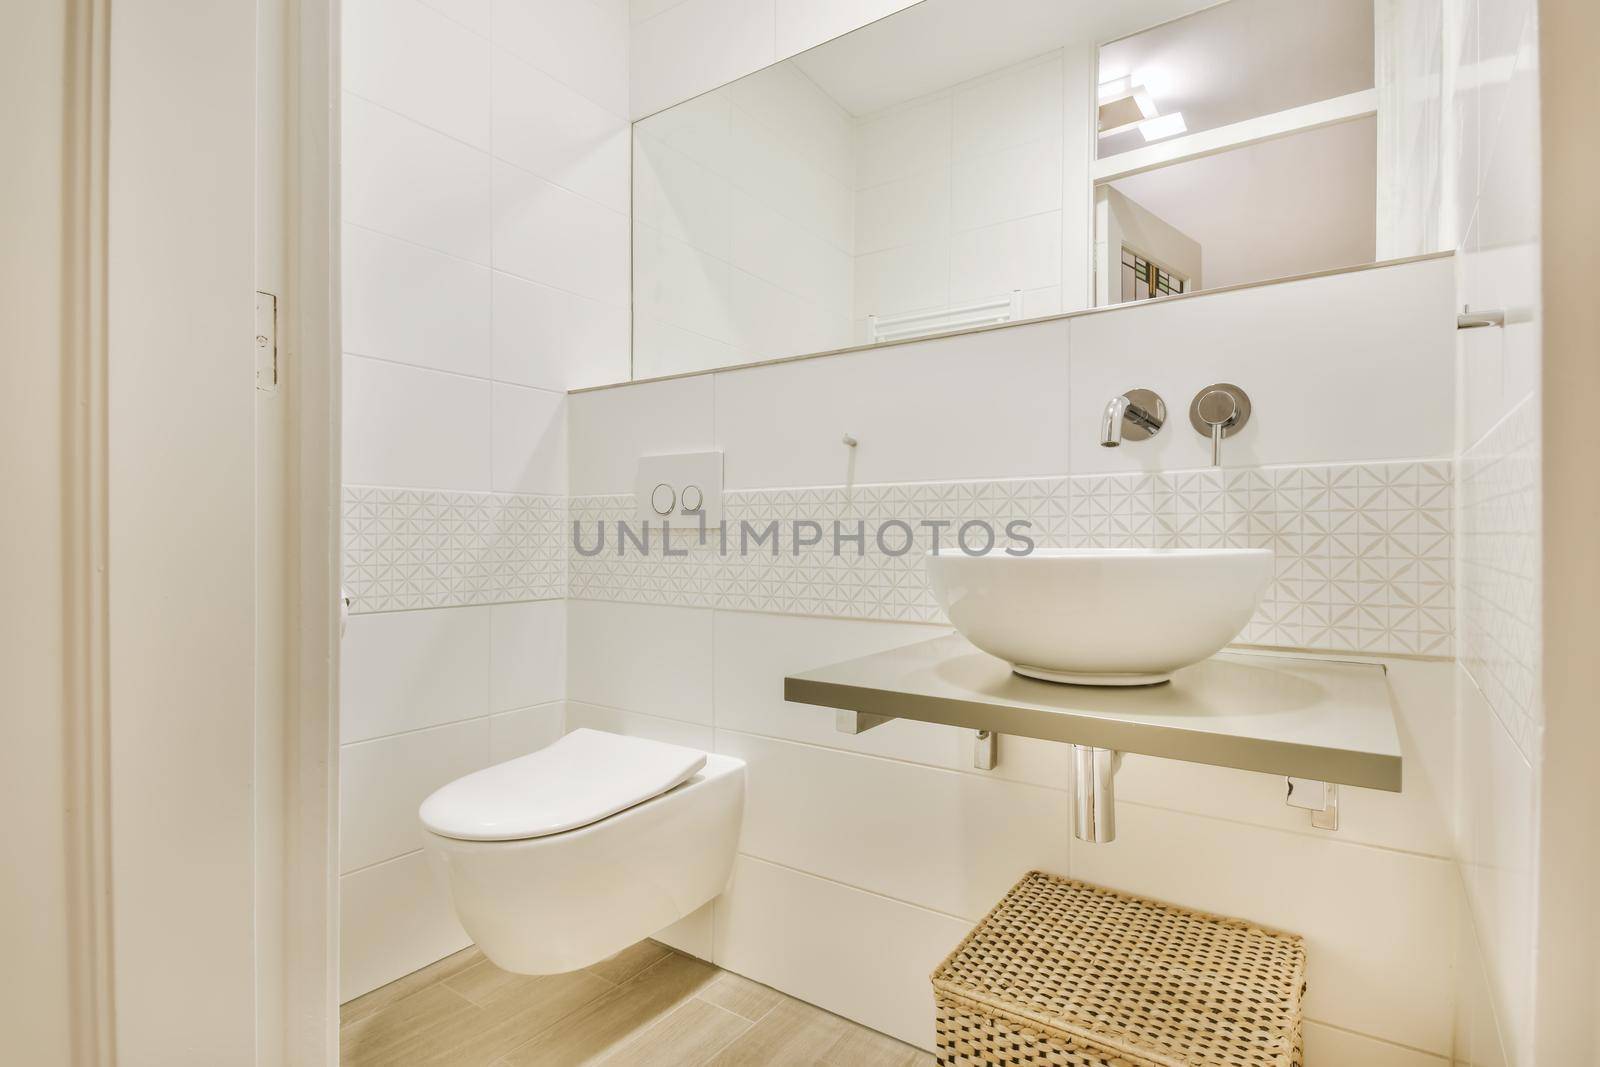 Design of elegant restroom in luxury apartment